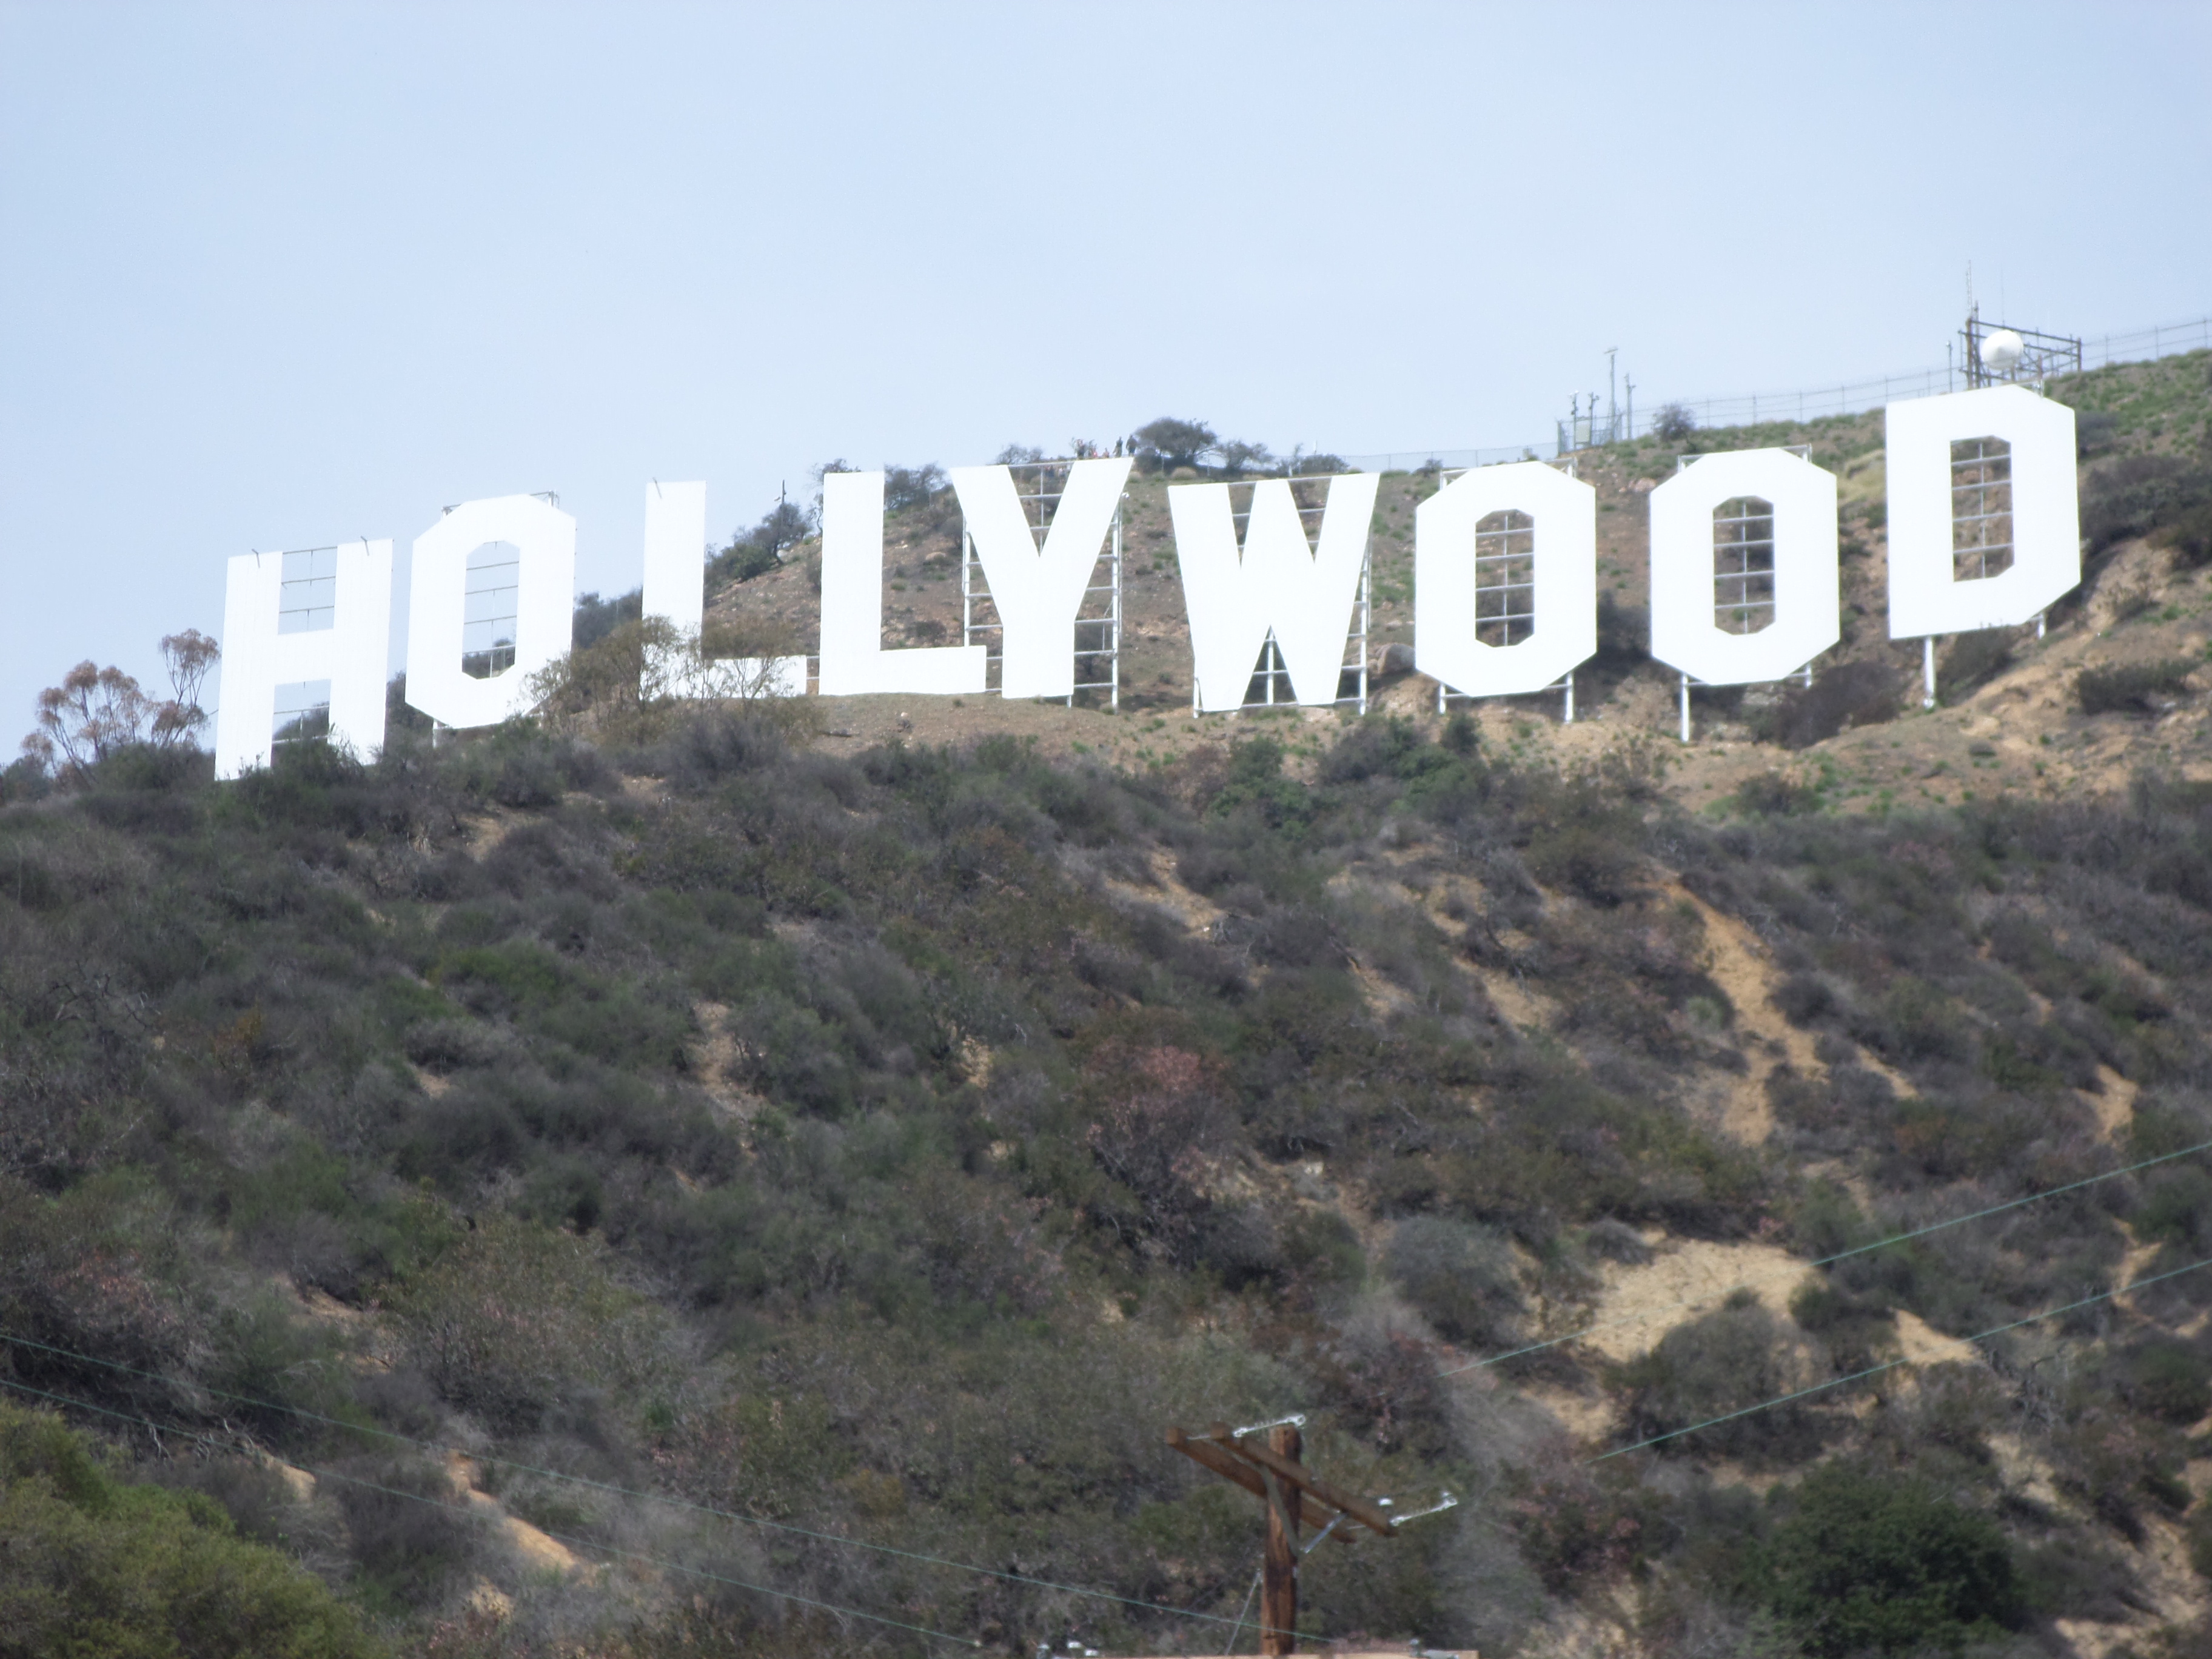 Hollywood Sign – A cara da cidade